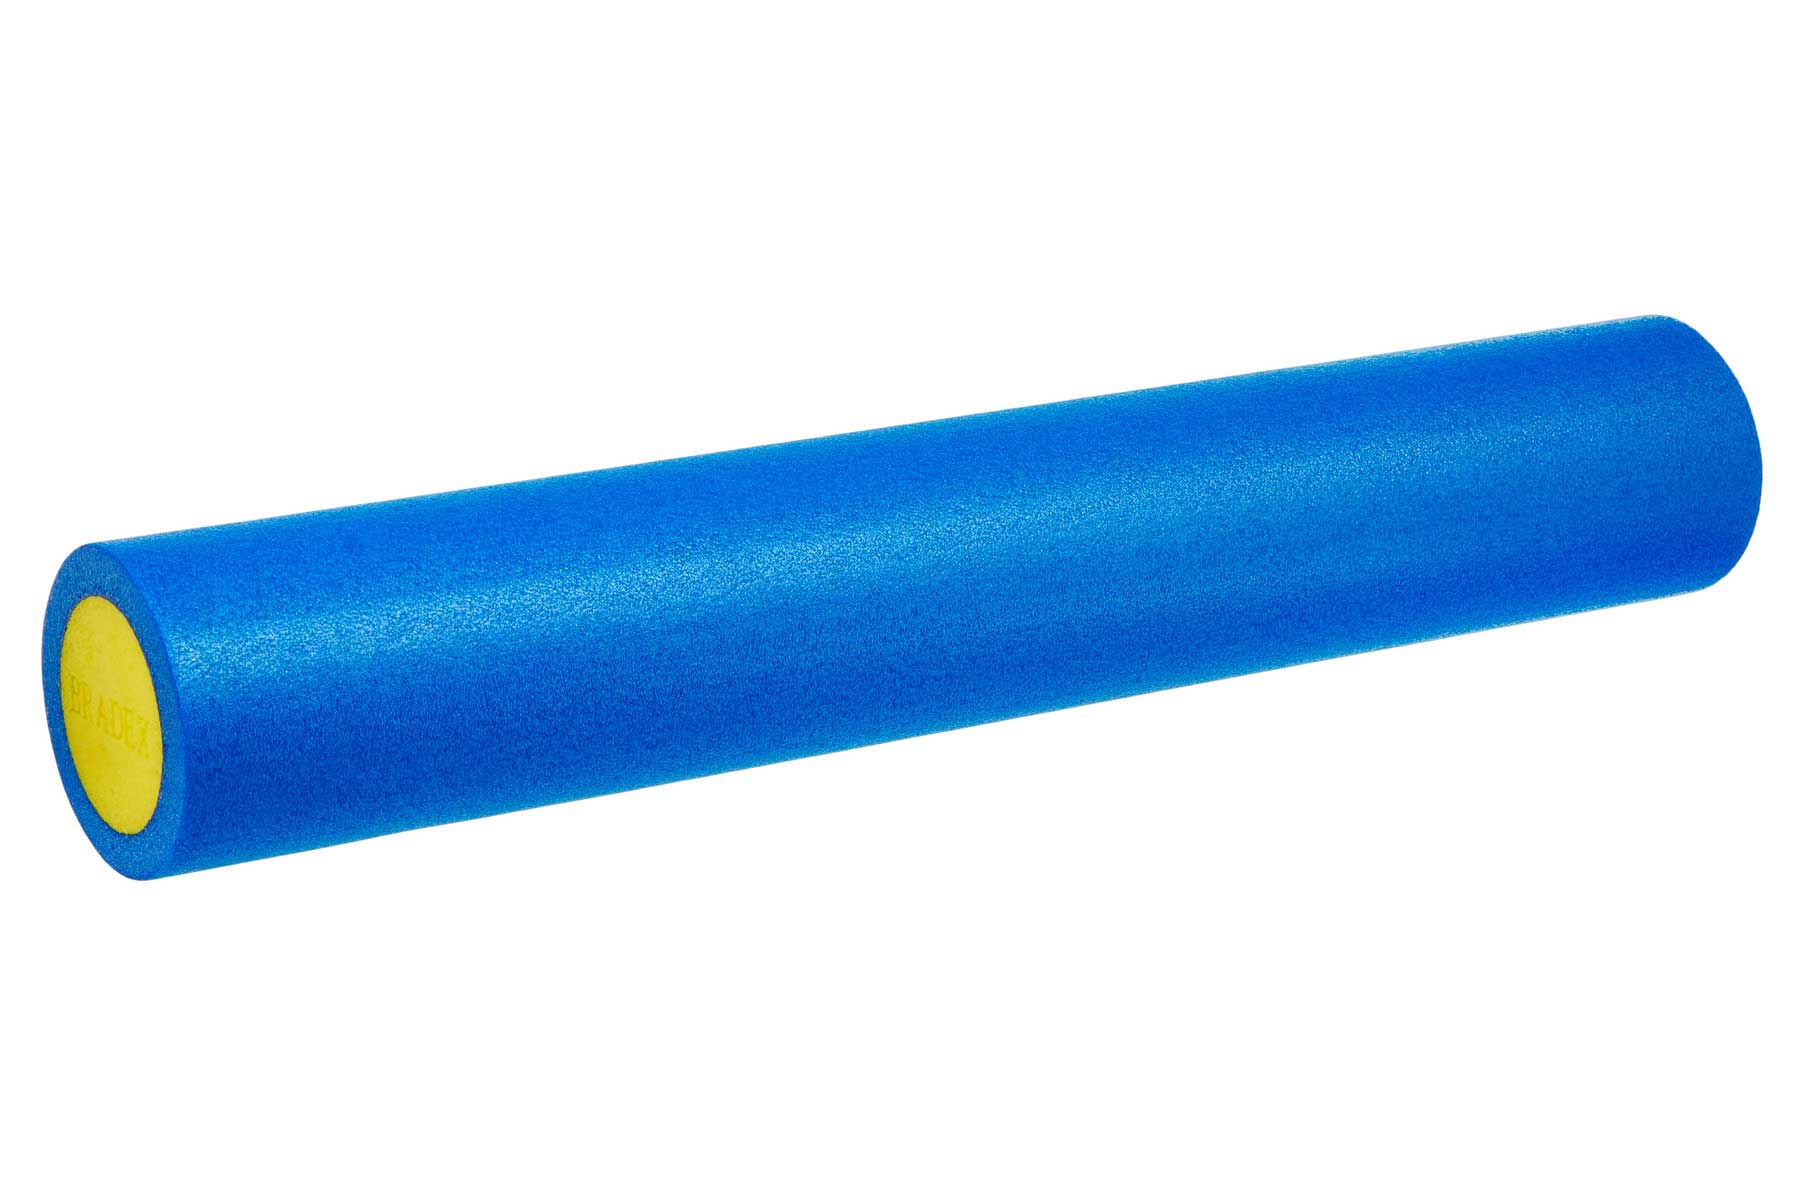 Ролик для йоги и пилатеса Bradex SF 0817, 15*90 см, голубой